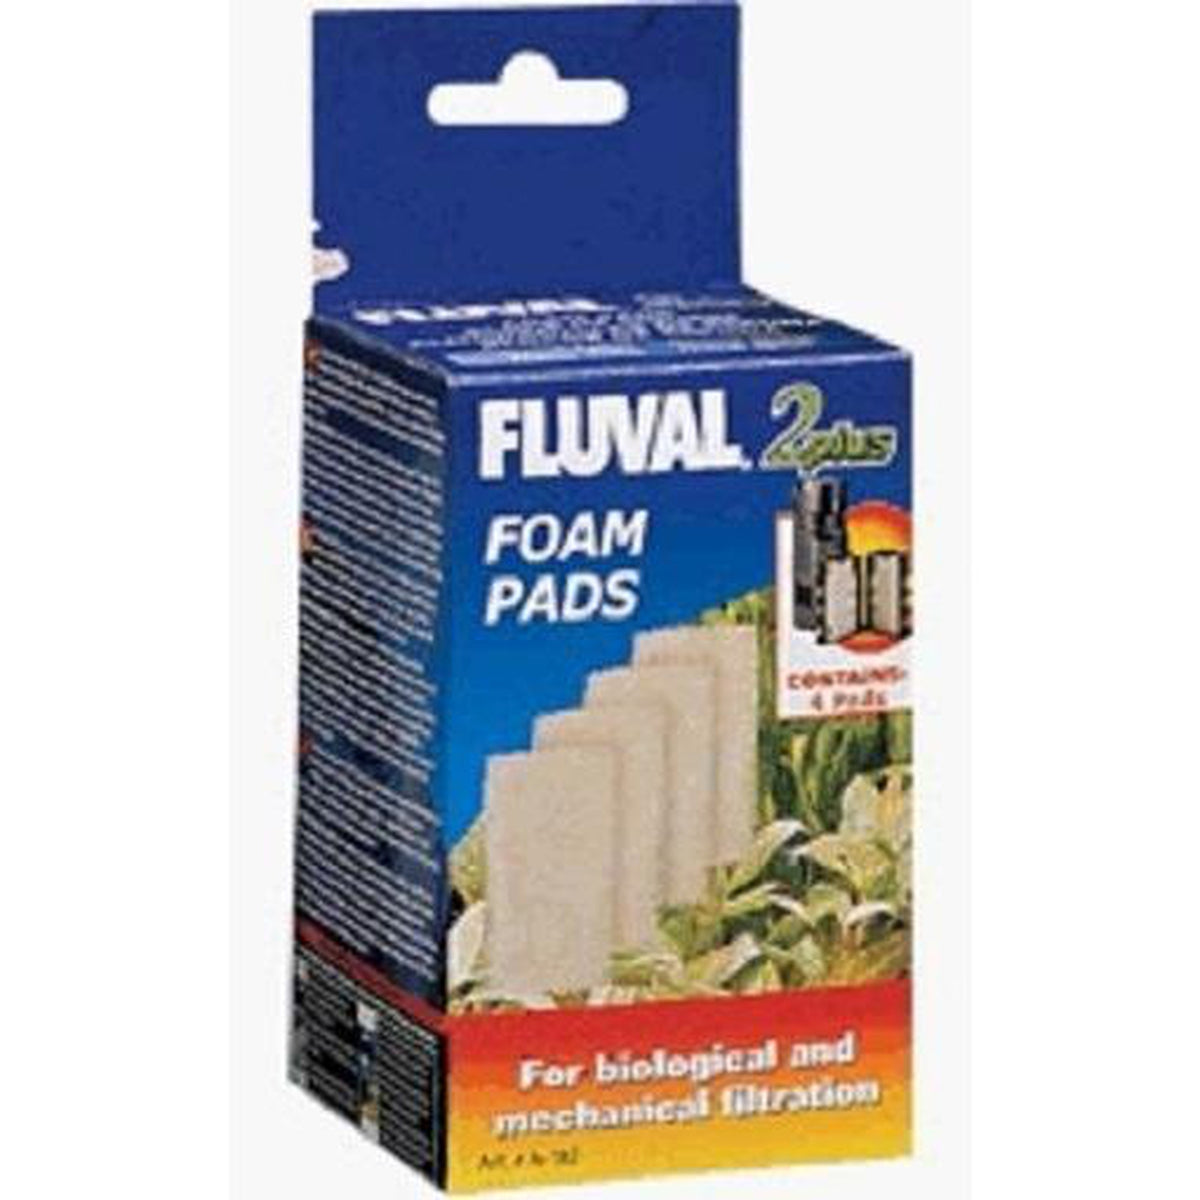 Fluval 2 Plus Foam Insert 4pk